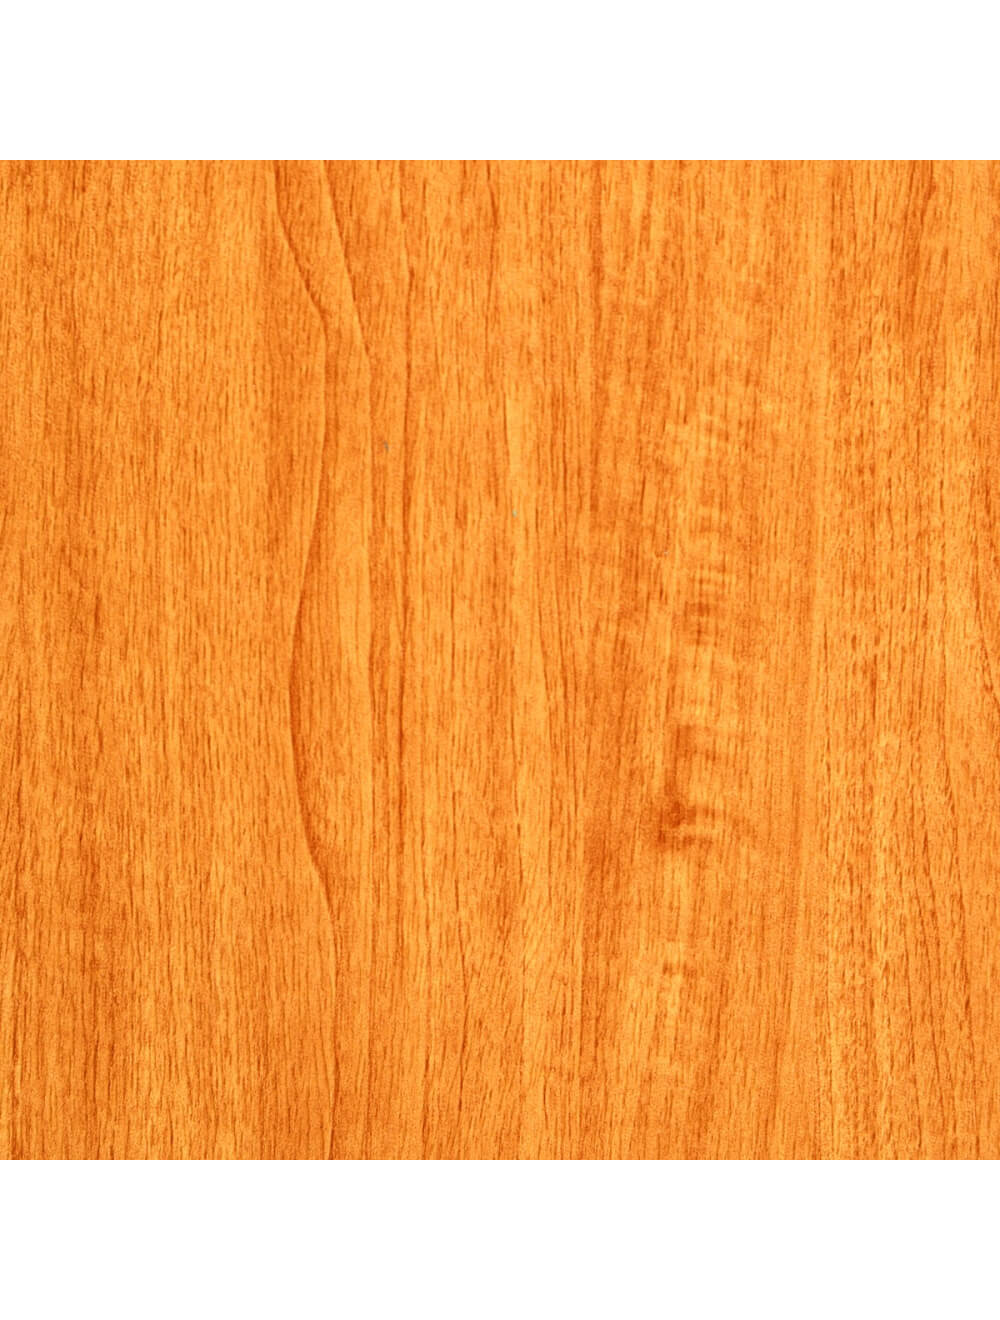 Materiaalstaal Washington geel houtnerf (E935)